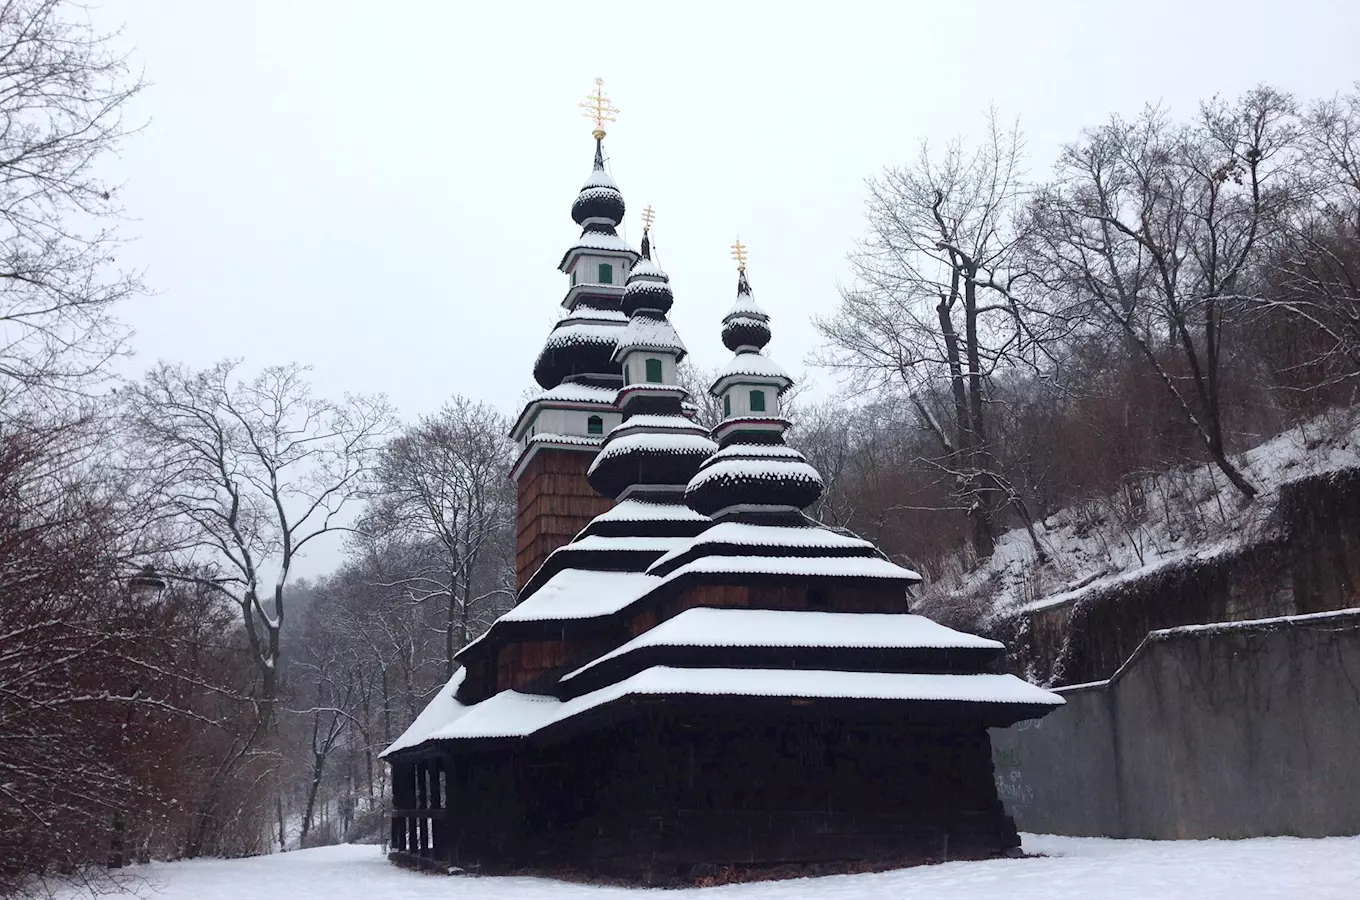 Užijte si kouzelné Vánoce na sněhu v pravoslavném chrámu svatého archanděla Michala na pražském Petř